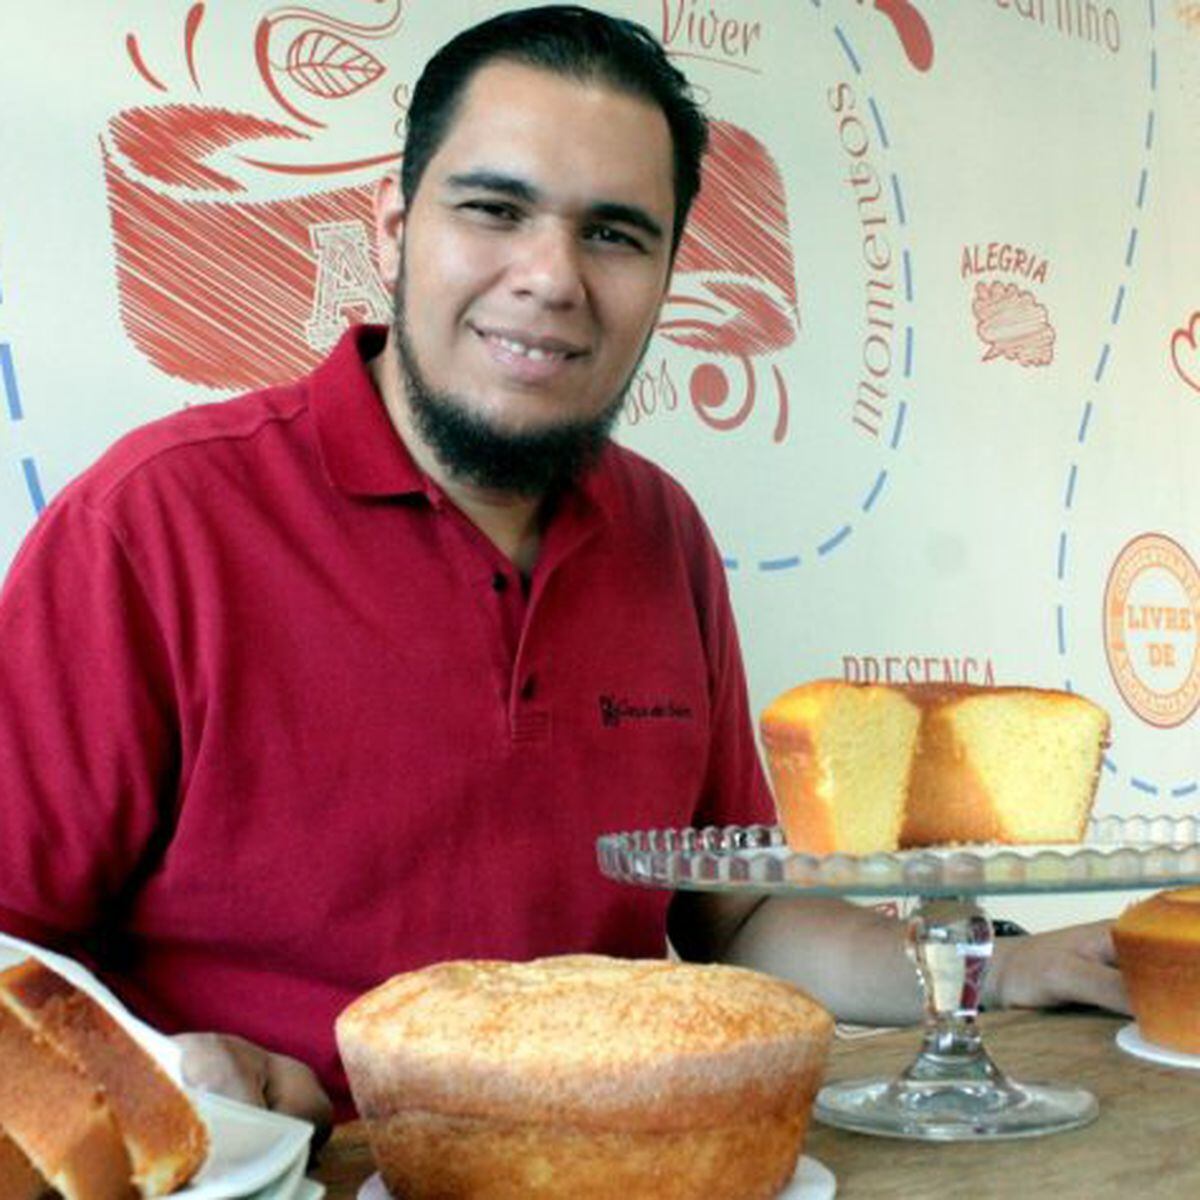 Boleira ensina a faturar 5 mil reais com a venda de bolos caseiros